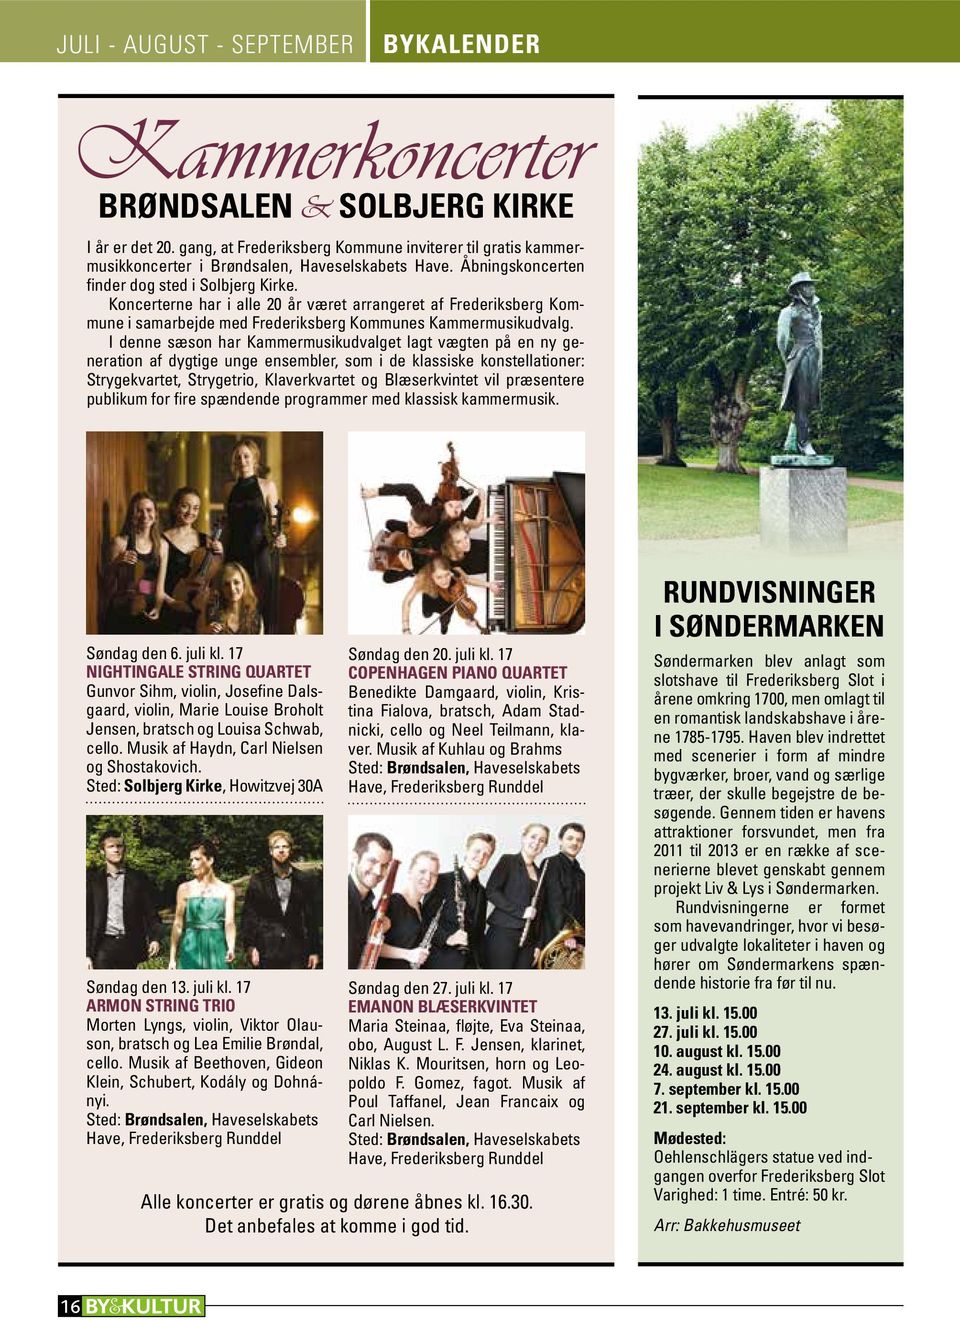 Koncerterne har i alle 20 år været arrangeret af Frederiksberg Kommune i samarbejde med Frederiksberg Kommunes Kammermusikudvalg.